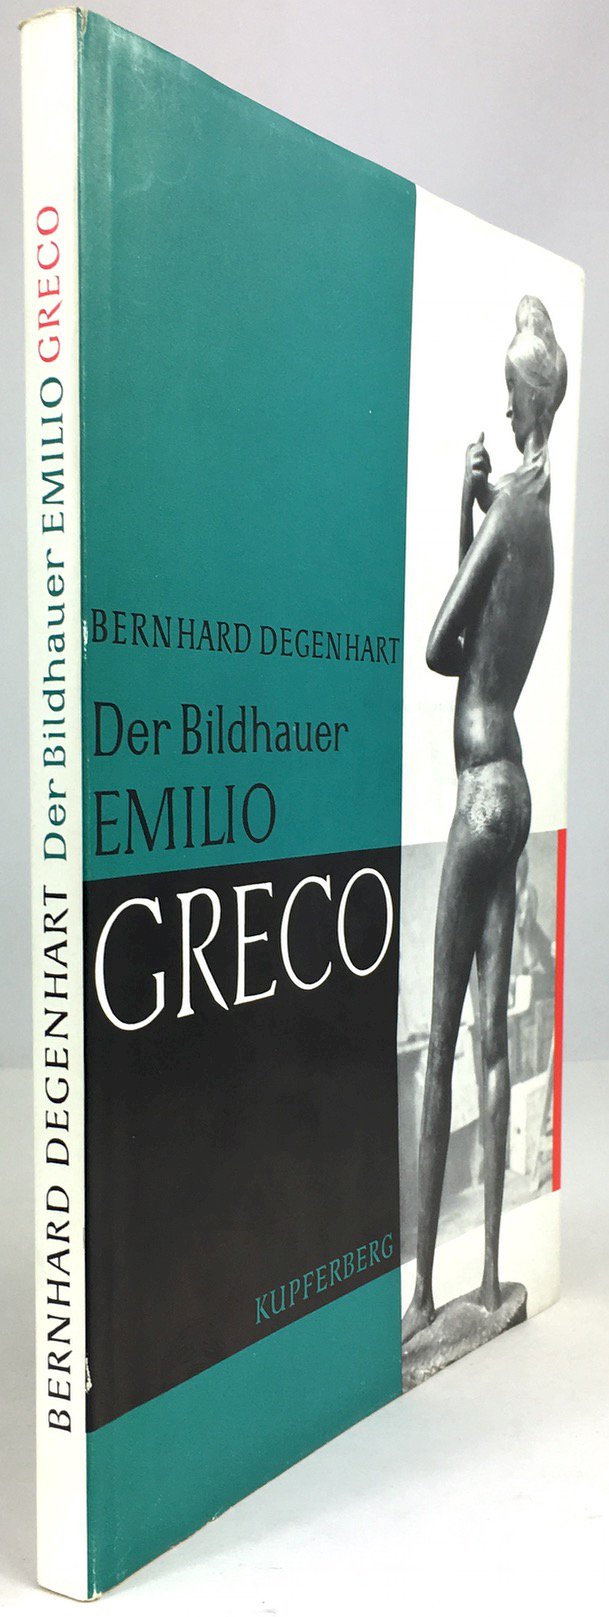 Abbildung von "Emilio Greco. (Schutzumschlagtitel : Der Bildhauer Emilio Greco.)"